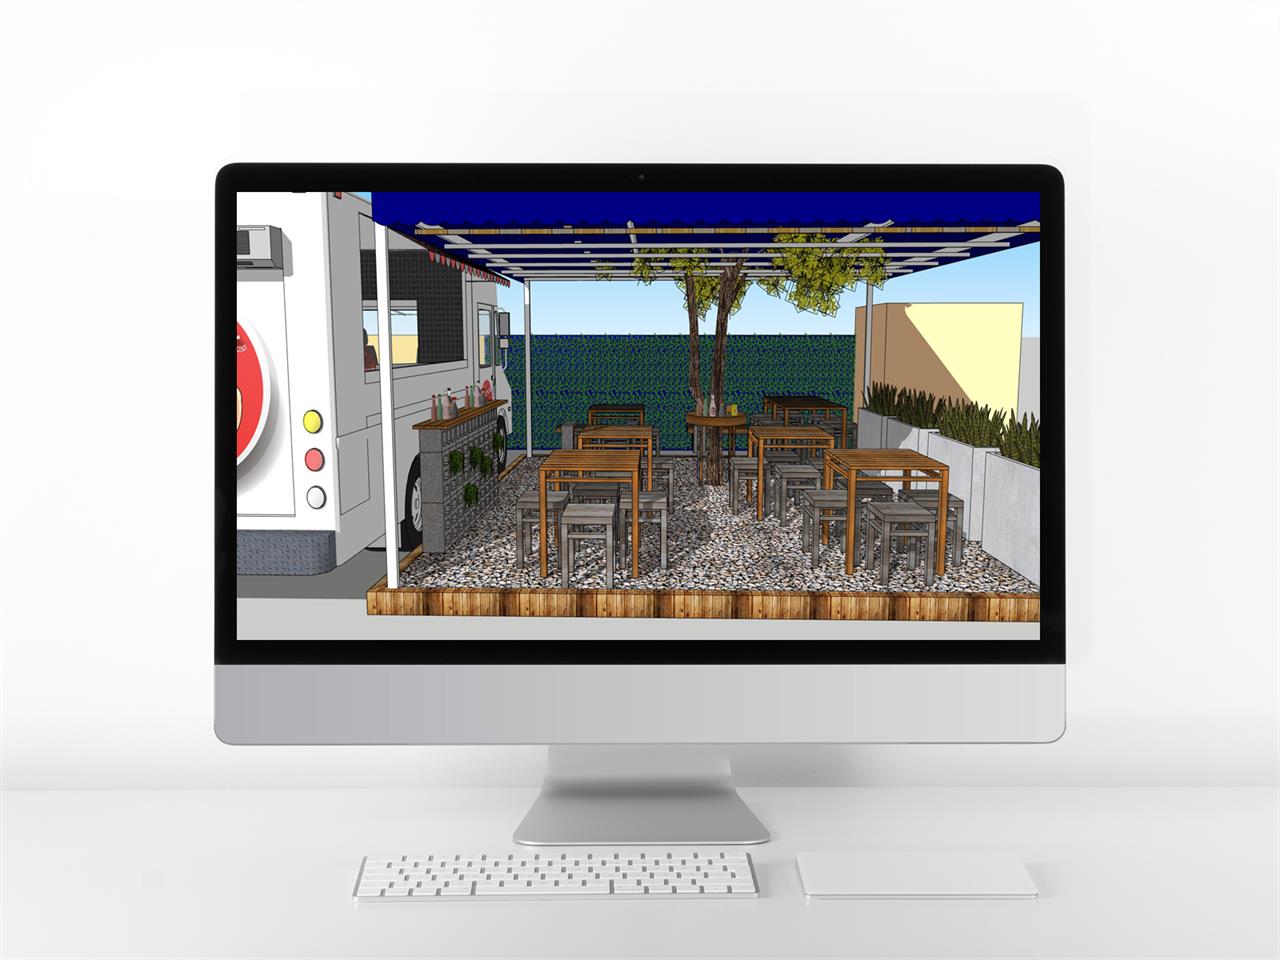 간단한 식당 꾸미기 웹툰배경 샘플 사이트 미리보기